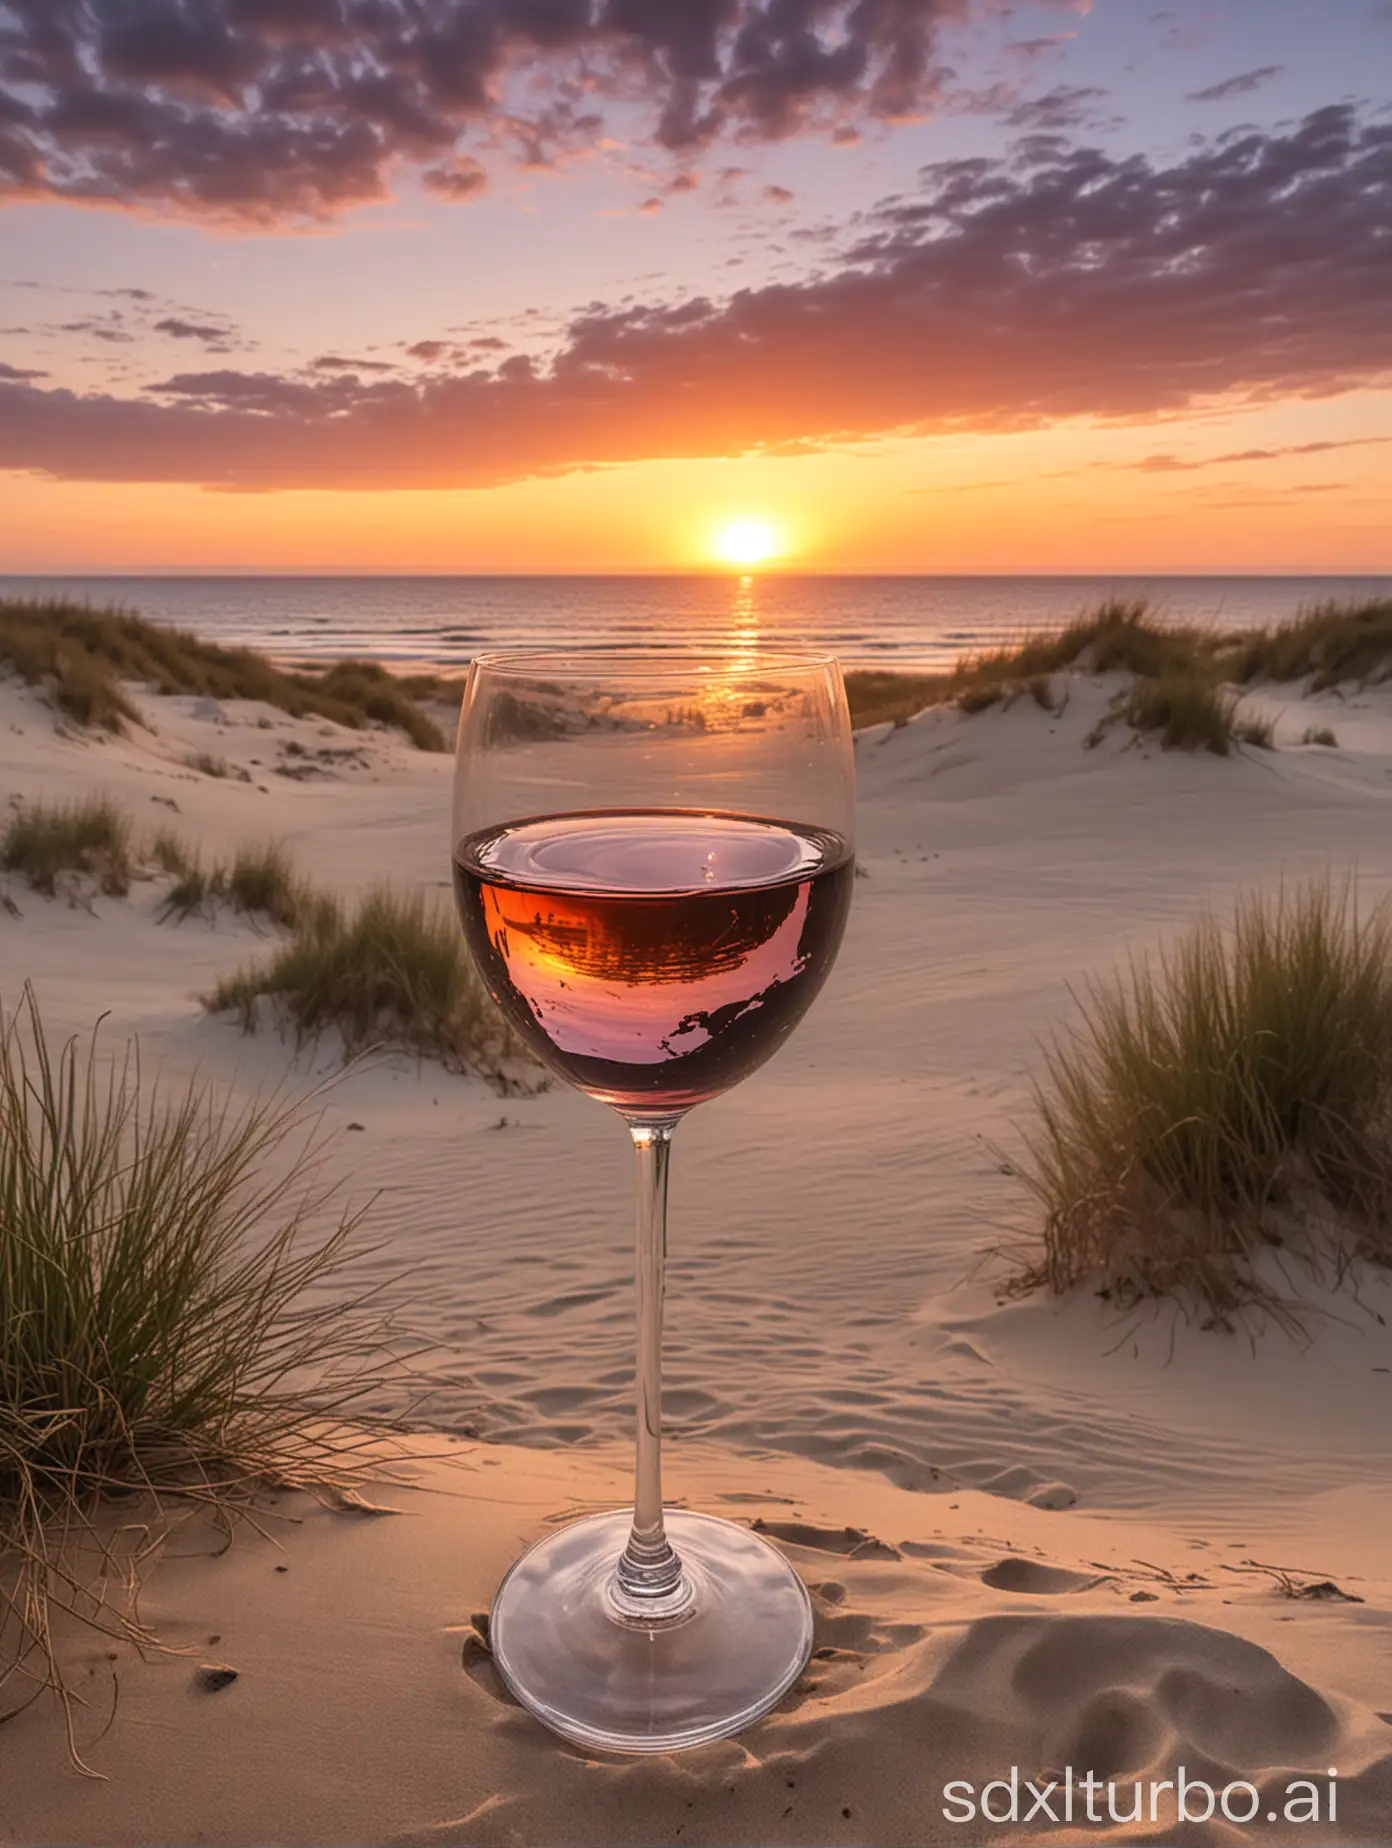 Sonnenuntergang in den Dünen am Meer mit einem Glas Wein